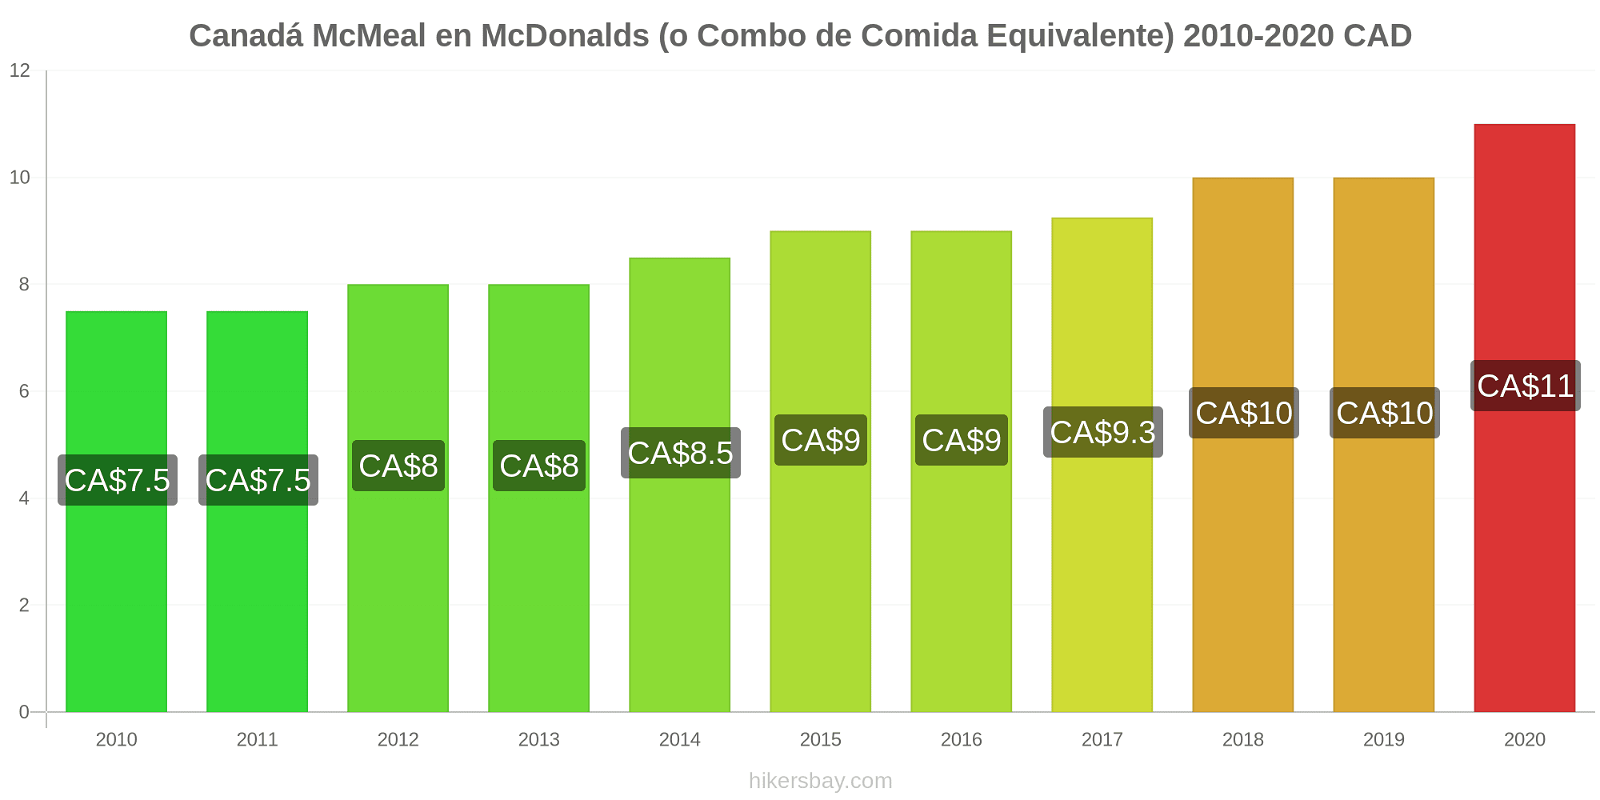 Canadá cambios de precios McMeal en McDonalds (o menú equivalente) hikersbay.com